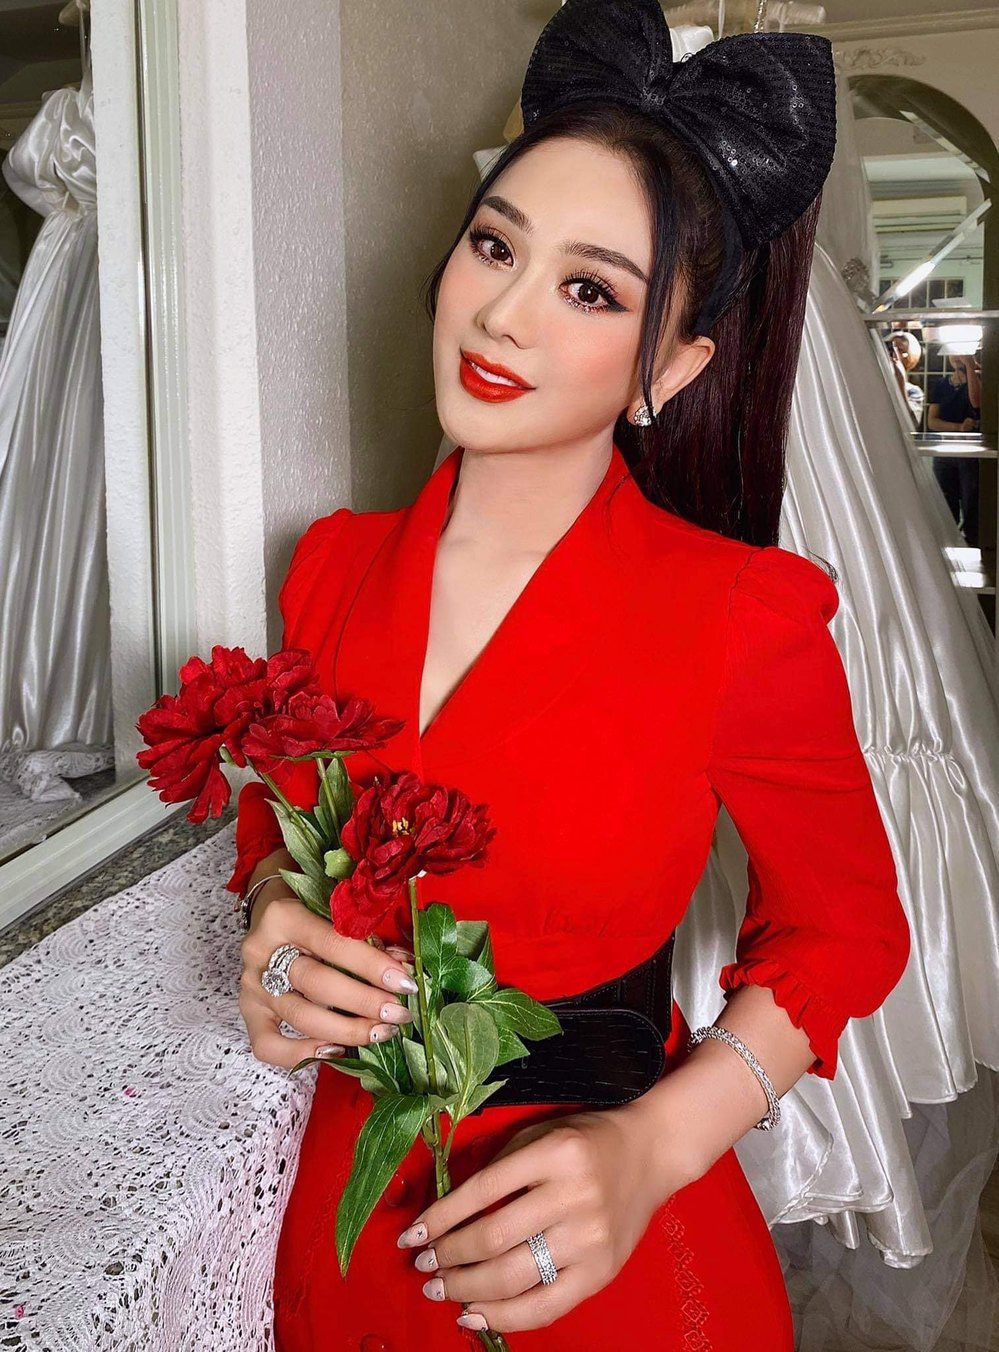 Lâm Khánh Chi là một trong những sao Việt chuyển giới nổi tiếng khắp làng giải trí Việt hiện tại.